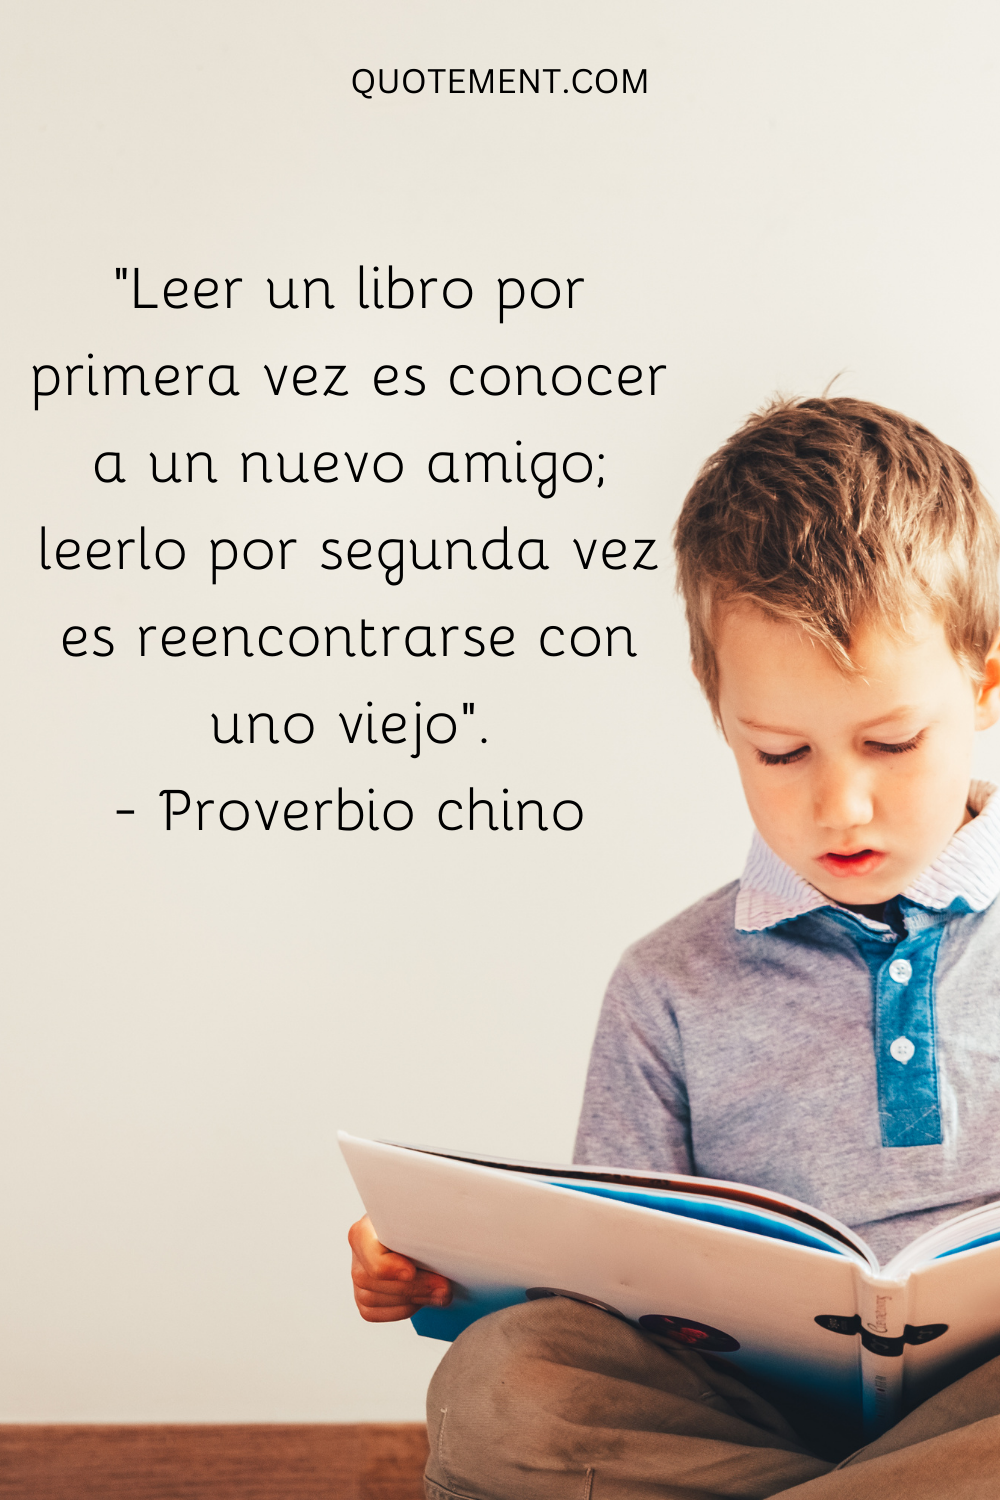 "Leer un libro por primera vez es conocer a un nuevo amigo; leerlo por segunda vez es reencontrarse con uno viejo". - Proverbio chino